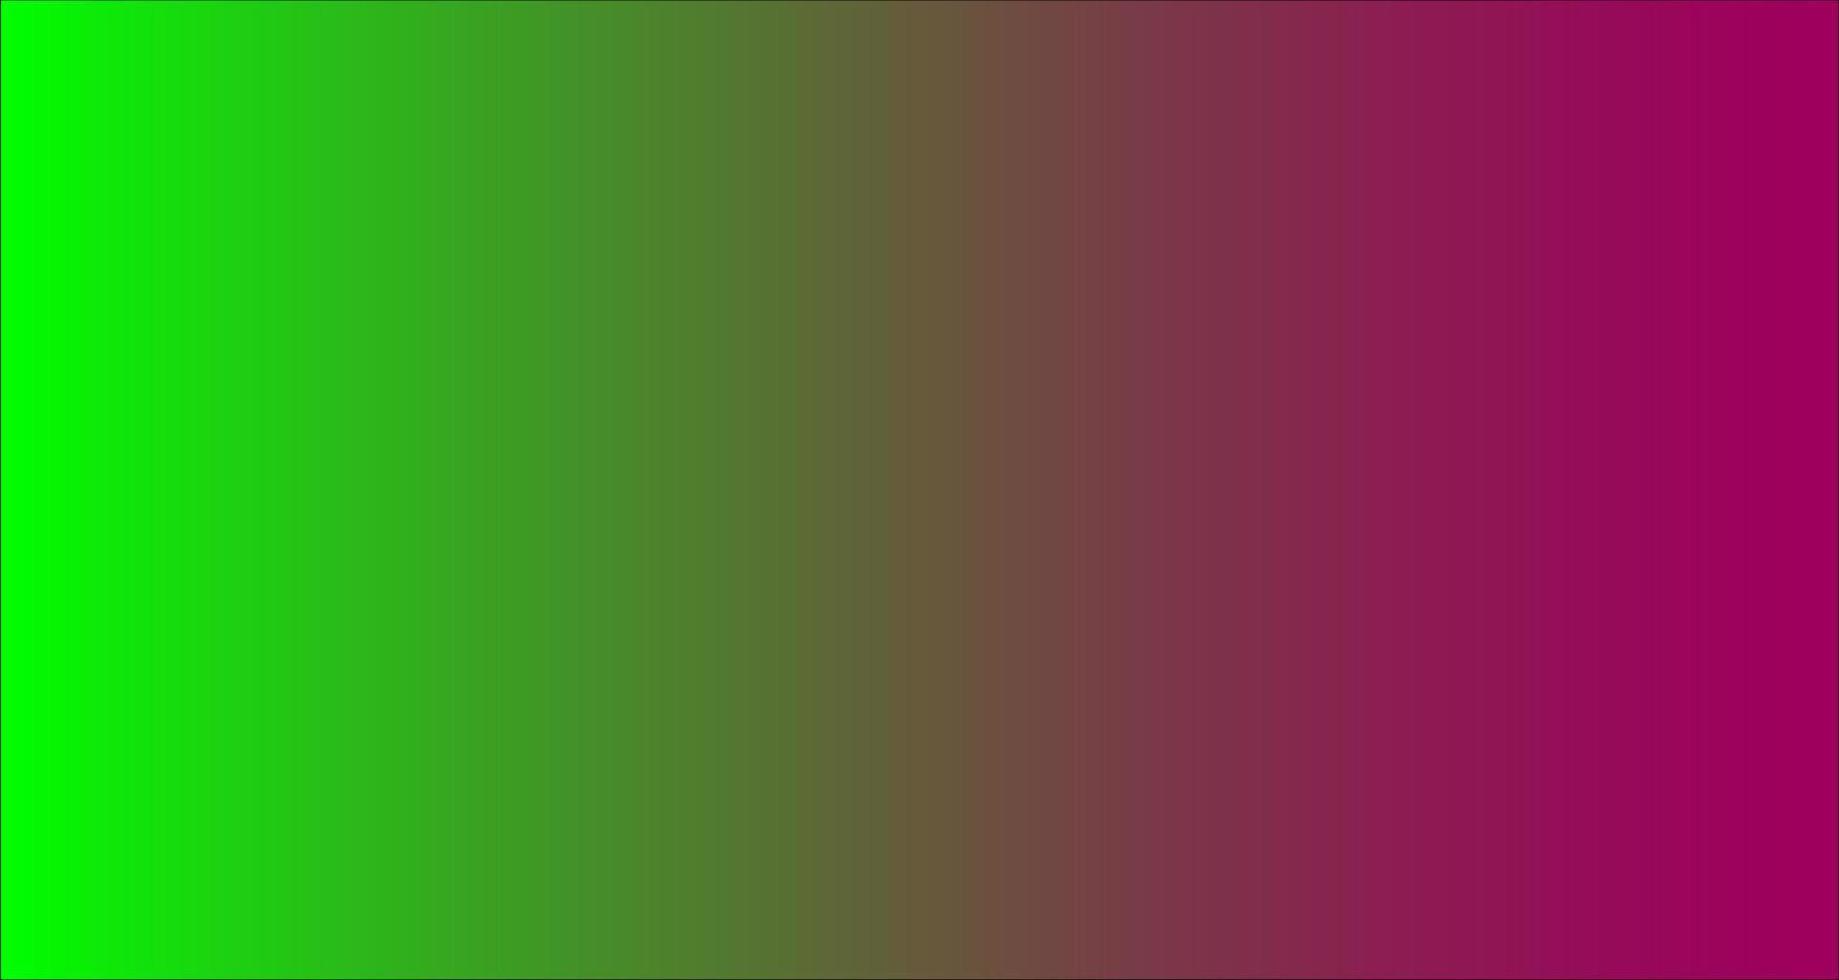 groene en paarse kleurrijke achtergrondverloopkleur vector